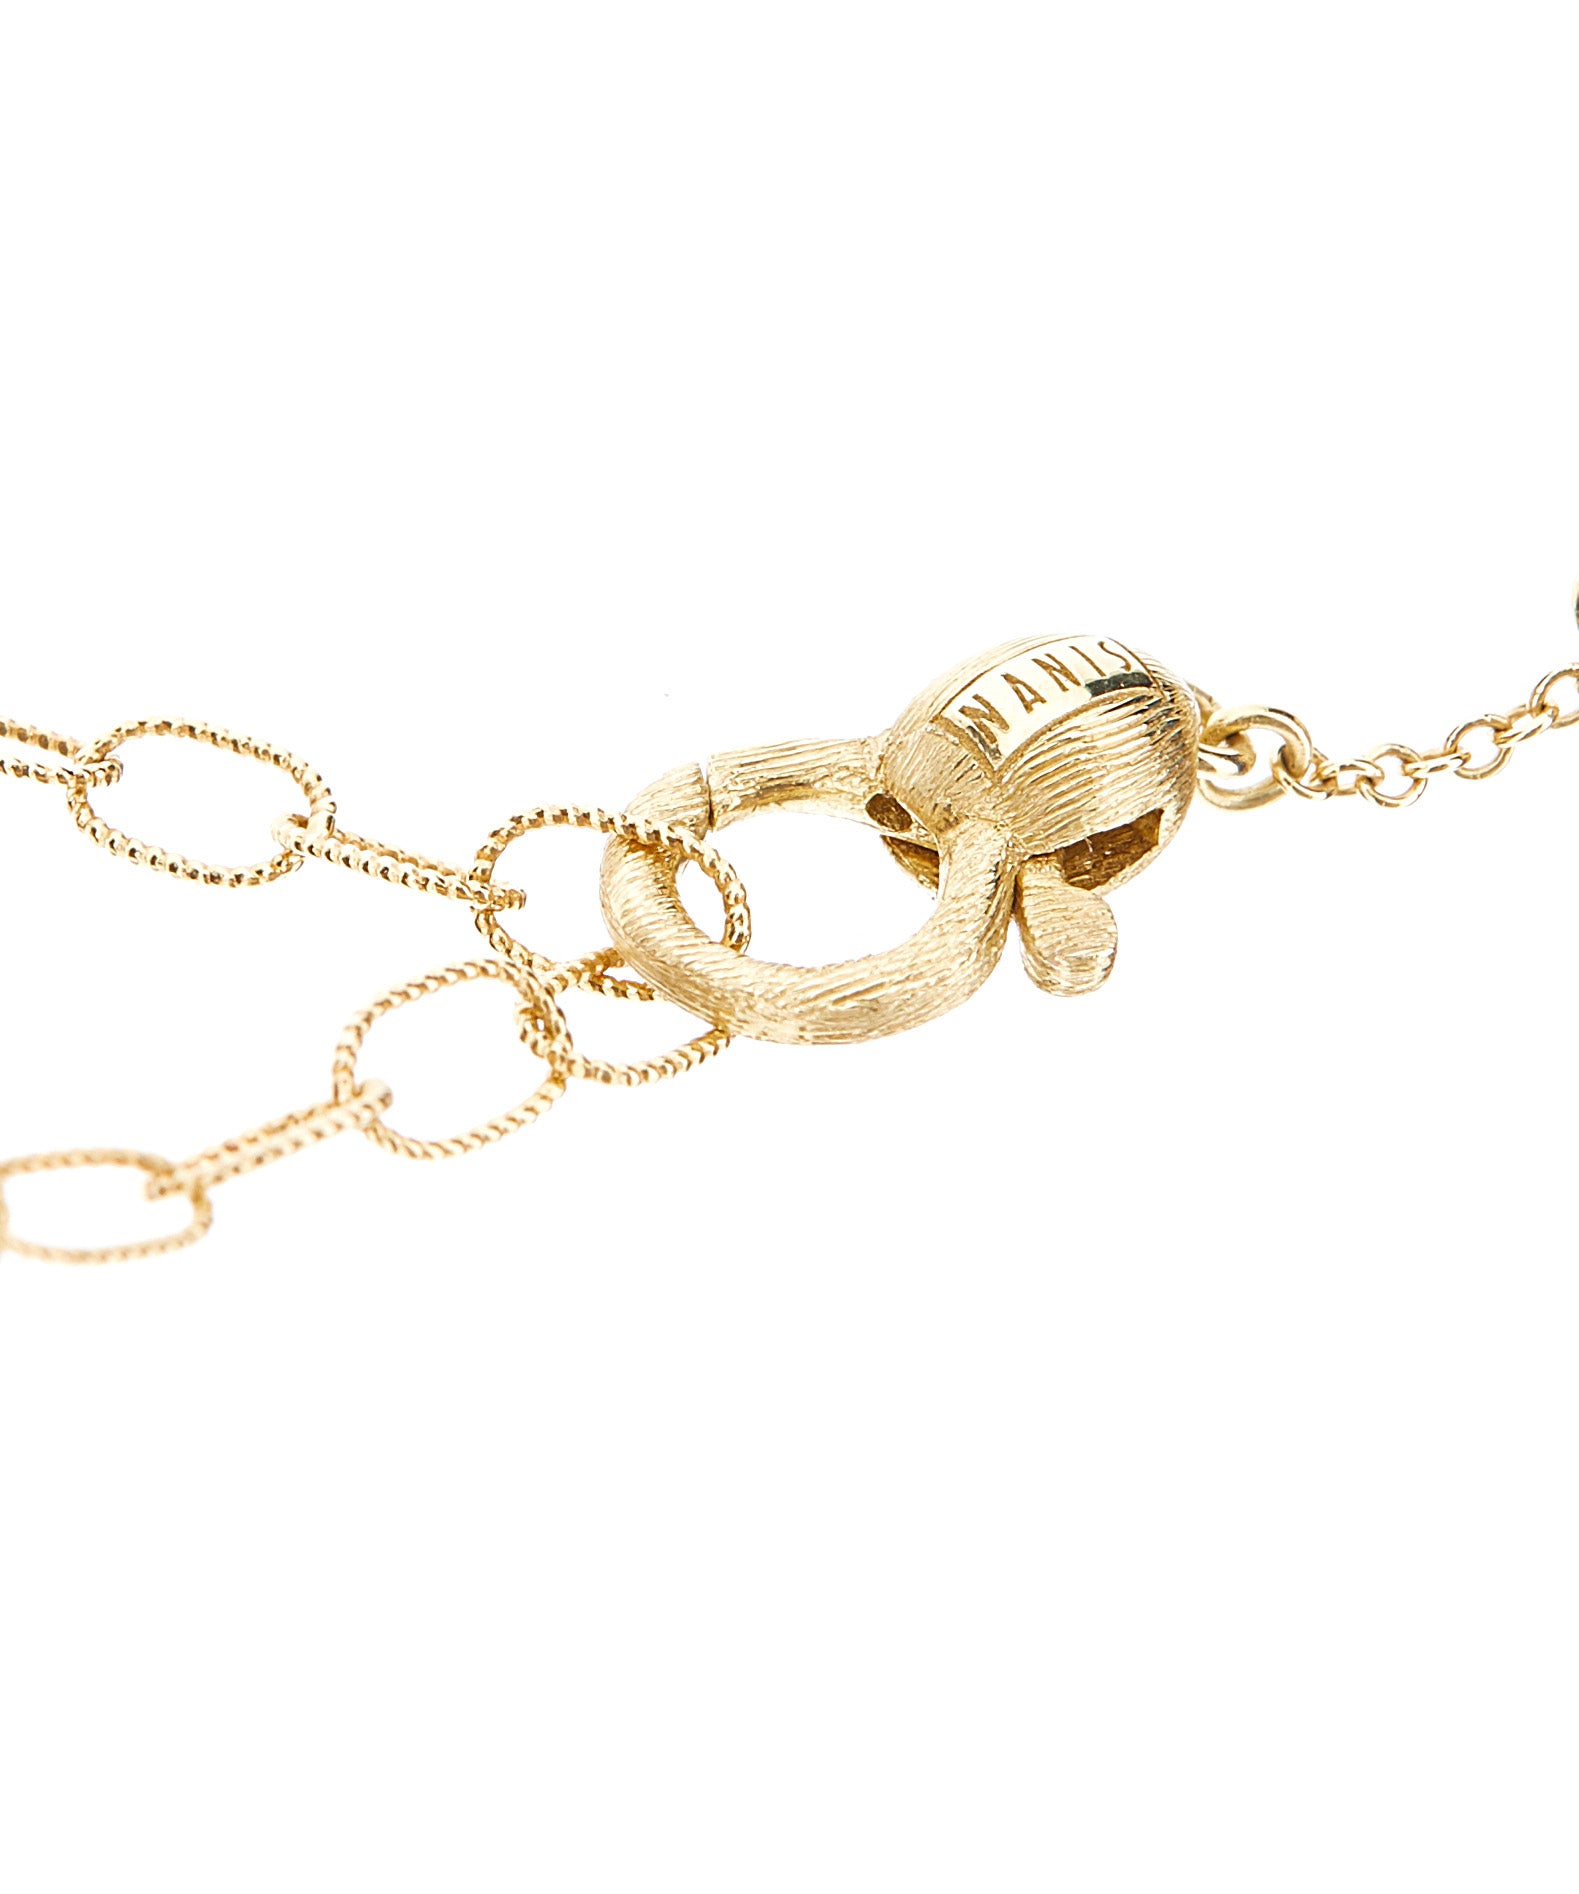 "Azure" Gold and Aquamarine thin bracelet